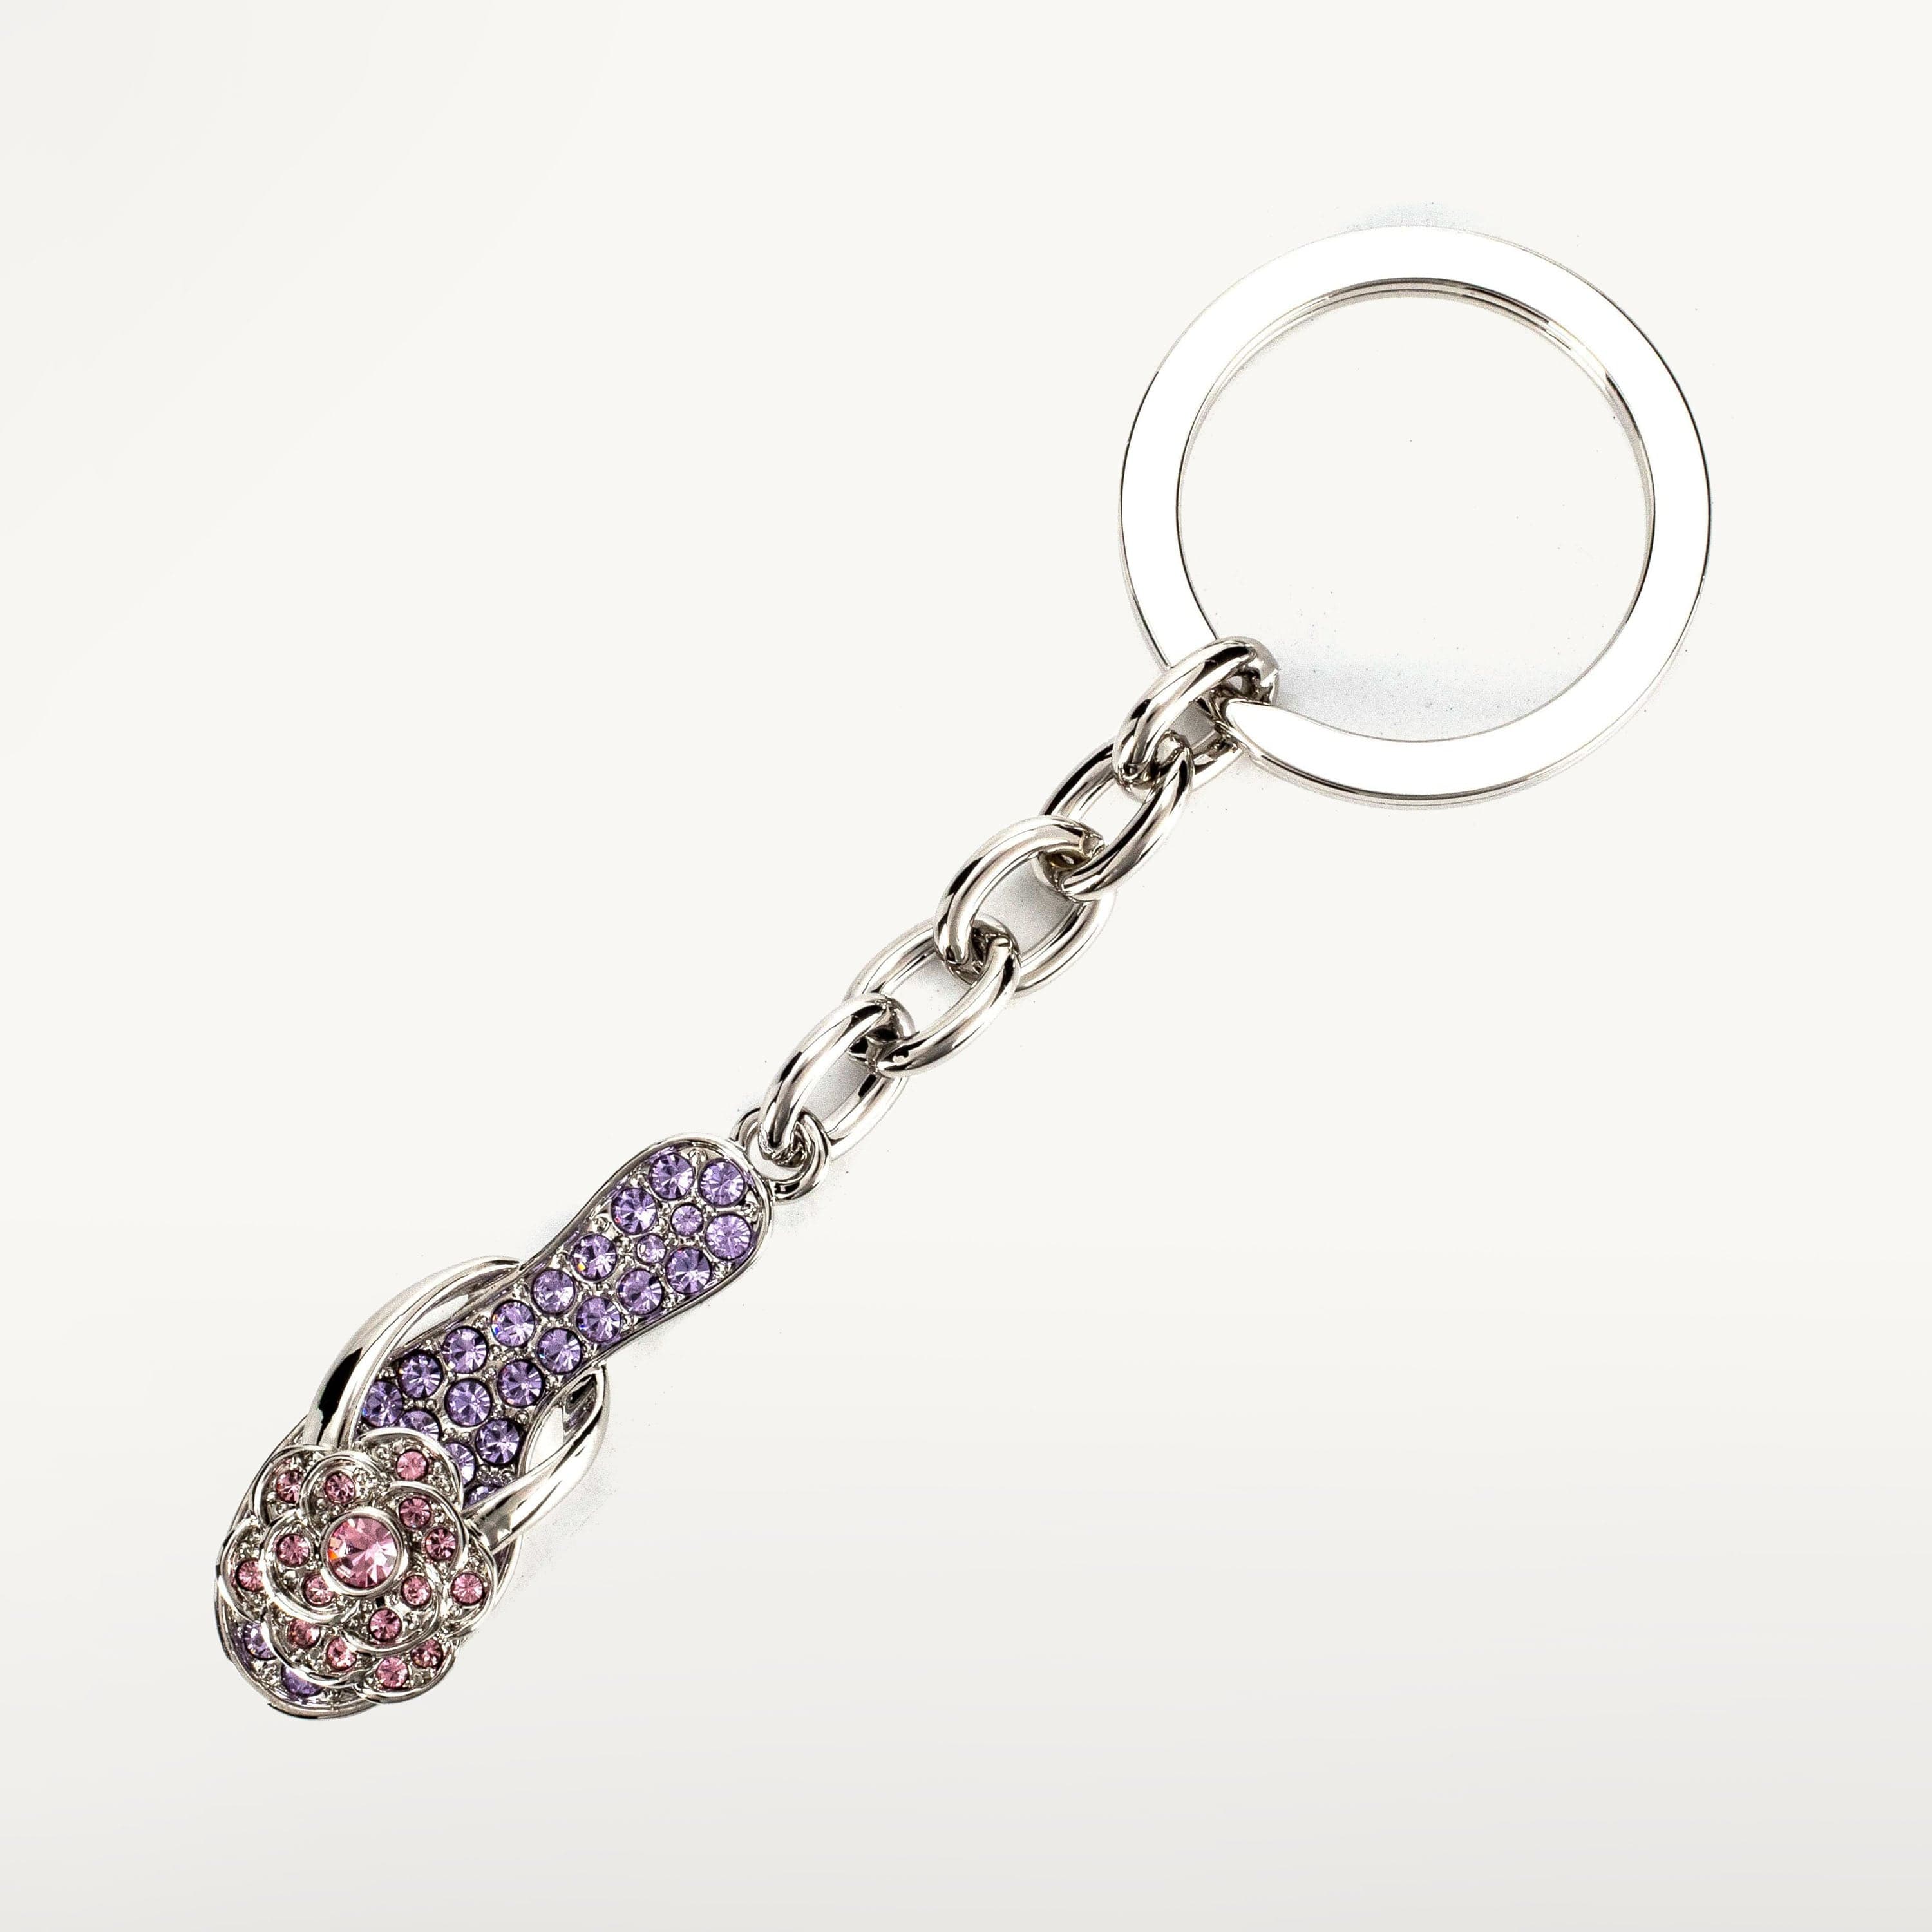 Kalifano Crystal Keychains Violet Slipper Keychain Made with Swarovski Crystals SKC-120